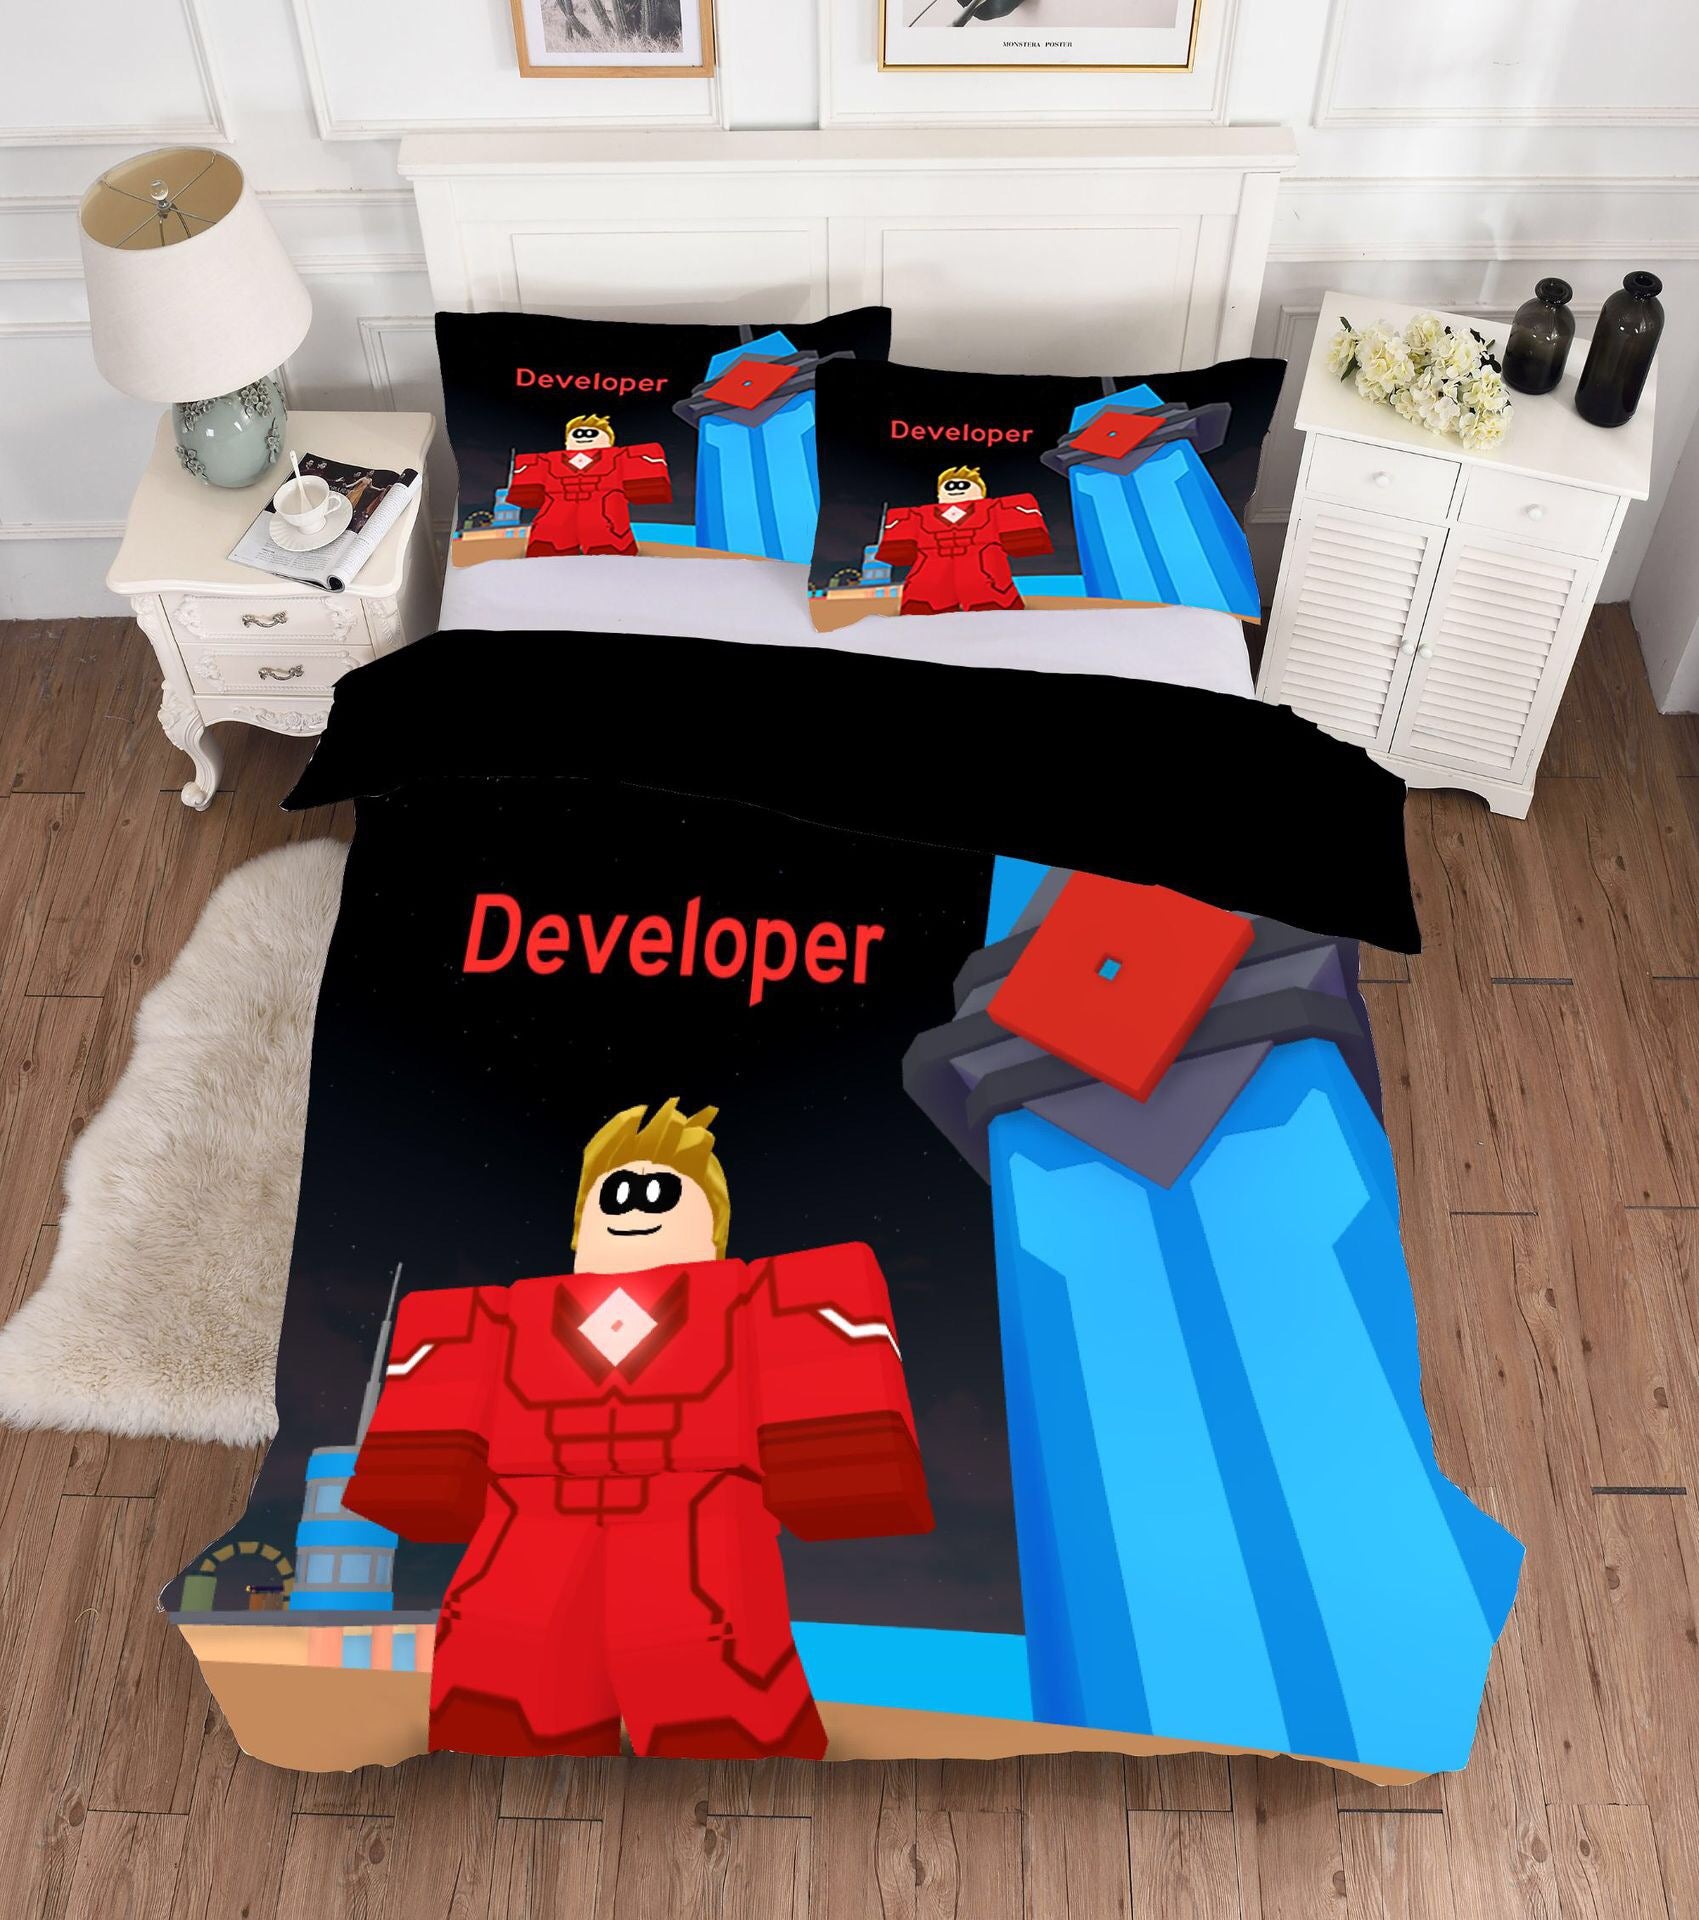 Game Roblox Developer Bedding Set Duvet Cover Set Bedroom Set Bedlinen 3d Bag For Kids - be spiderman roblox bedding spiderman news games games